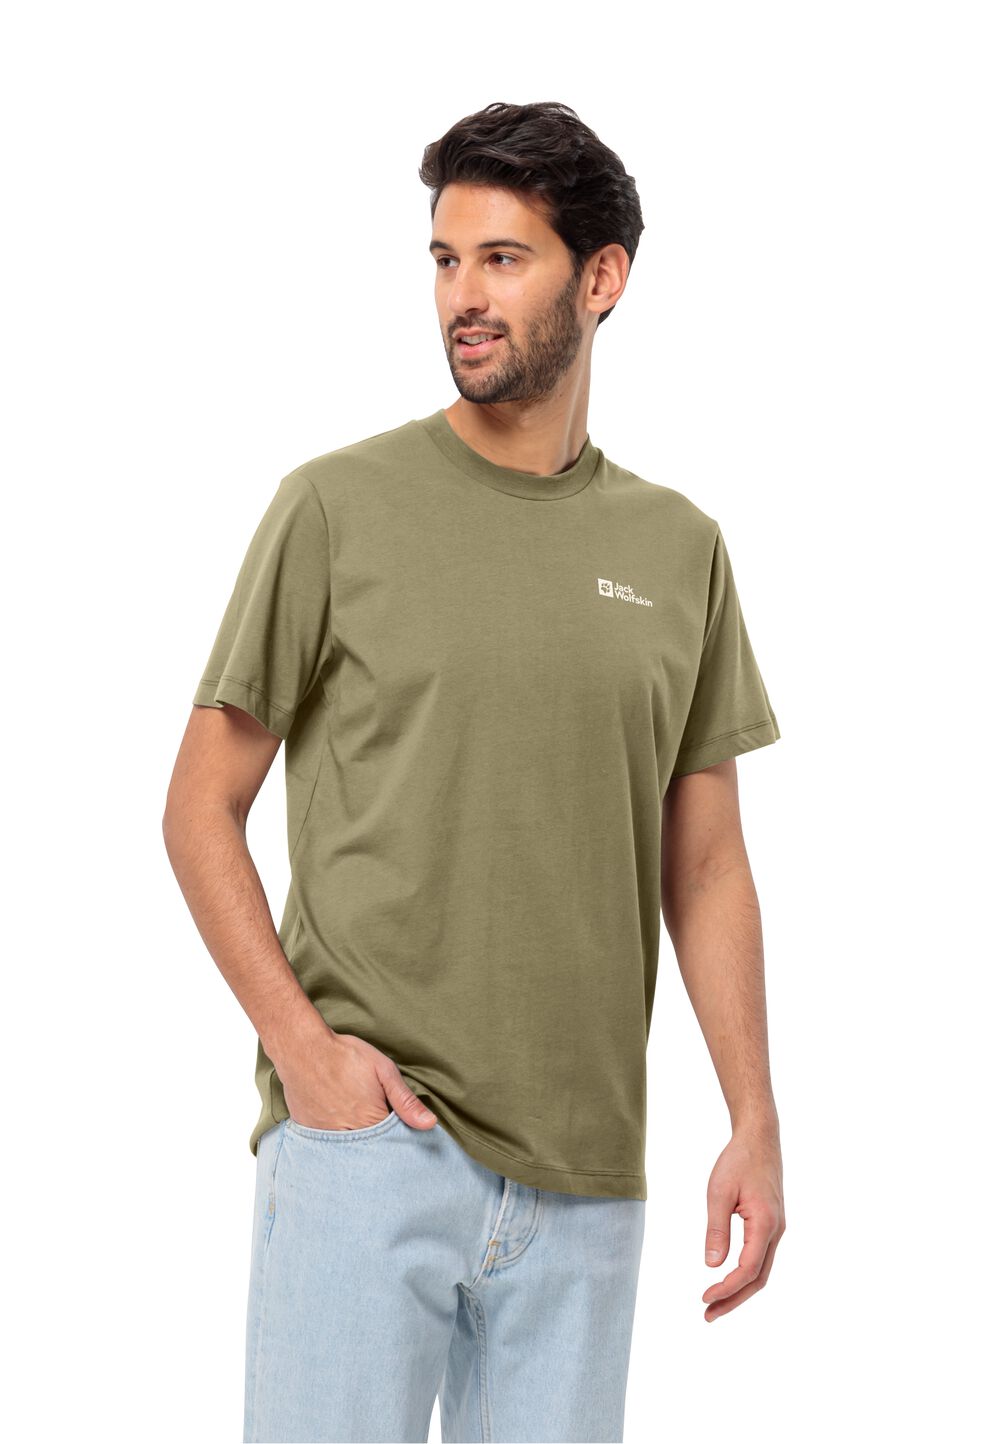 Jack Wolfskin Essential T-Shirt Men Heren T-shirt van biologisch katoen 3XL bruin bay leaf